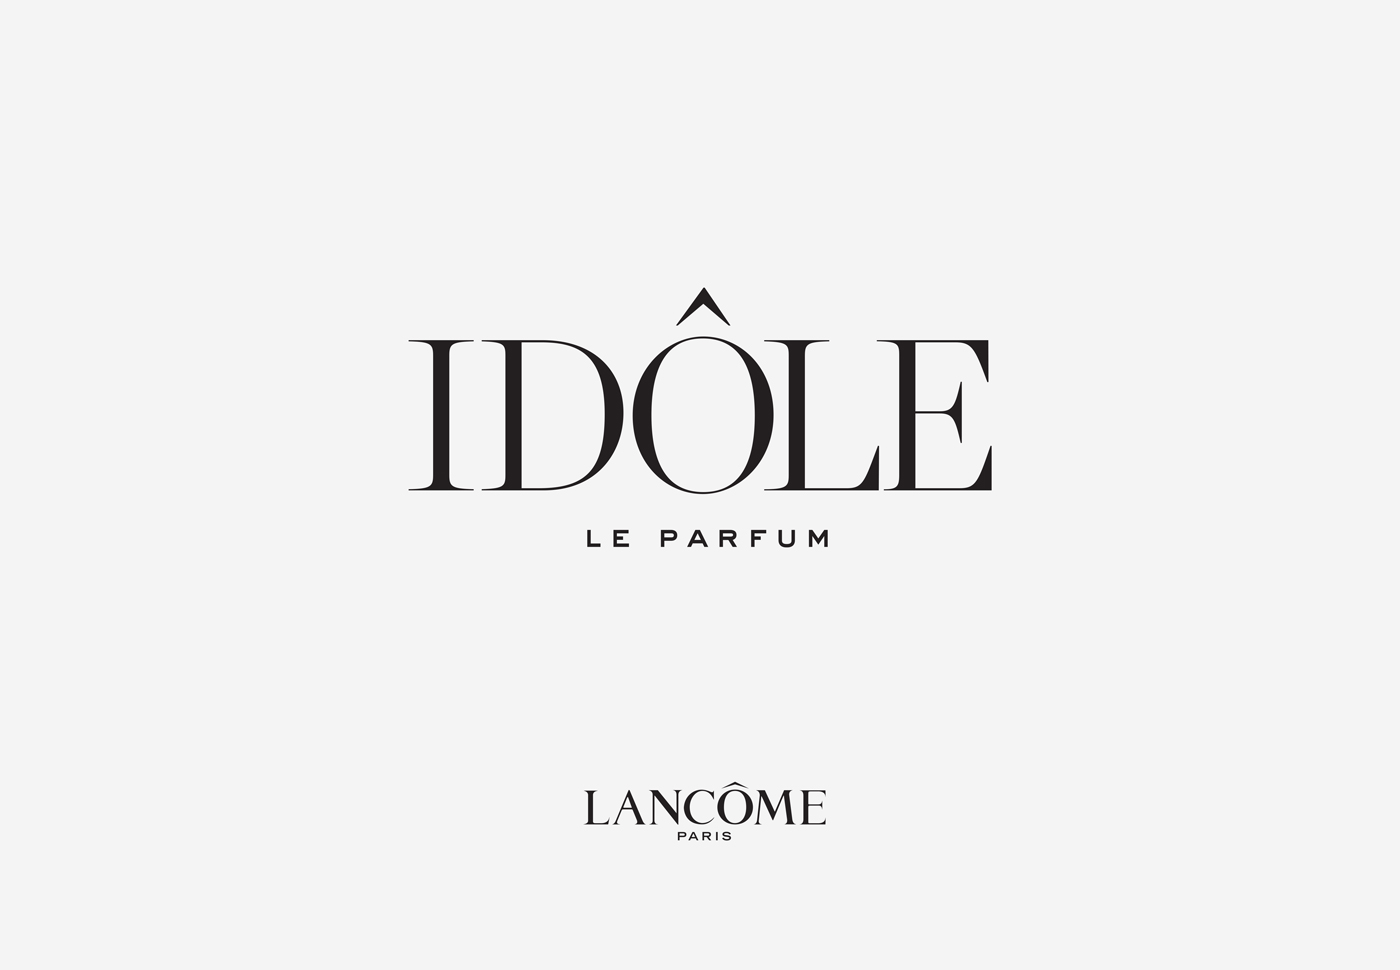 Lancôme Paris – Idôle Le Parfum